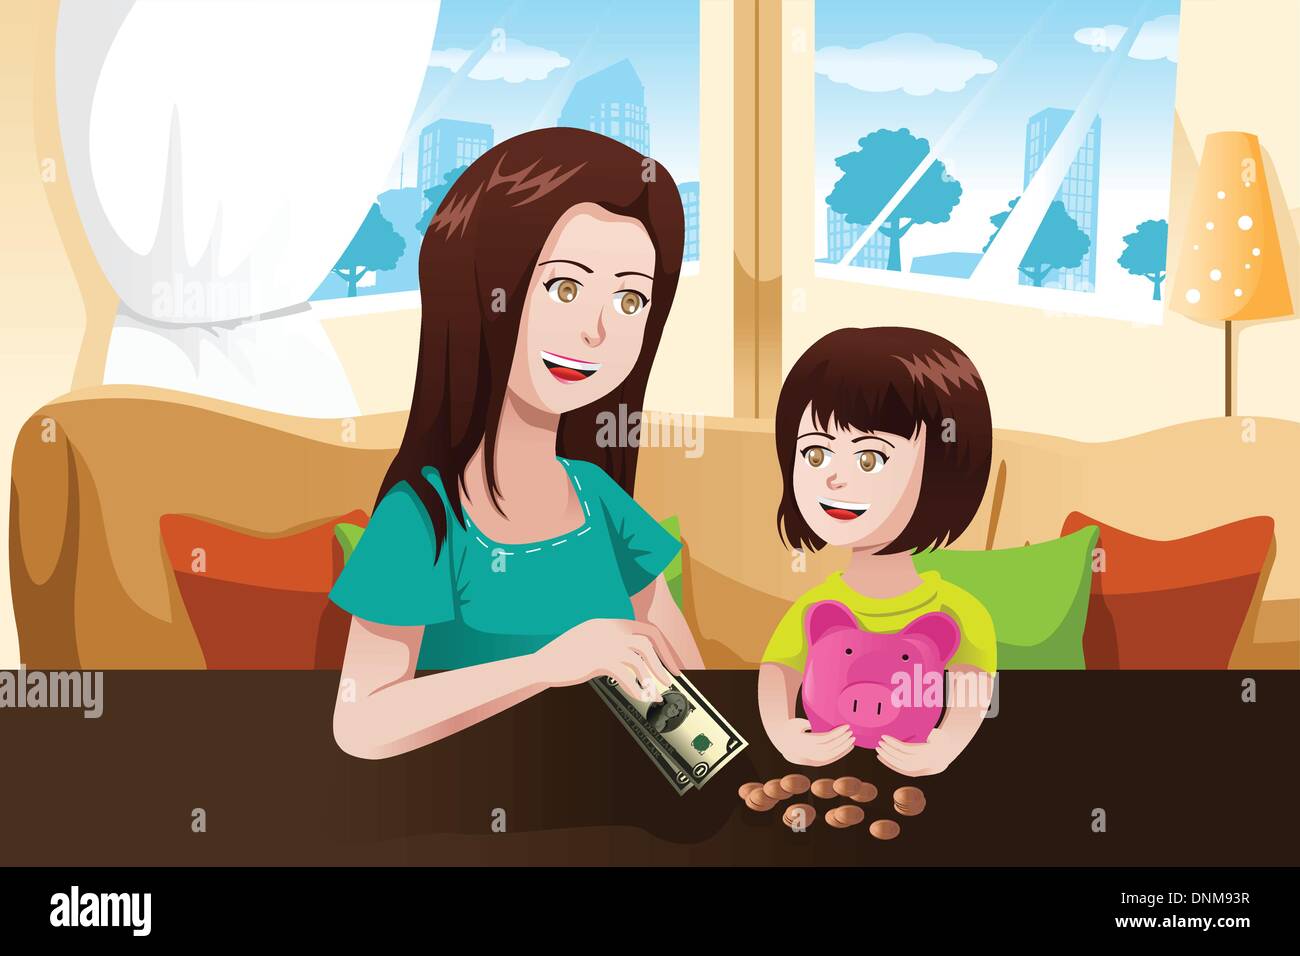 Un vecteur illustration de la belle mère de donner de l'argent à sa fille et l'enregistrer dans une tirelire Illustration de Vecteur